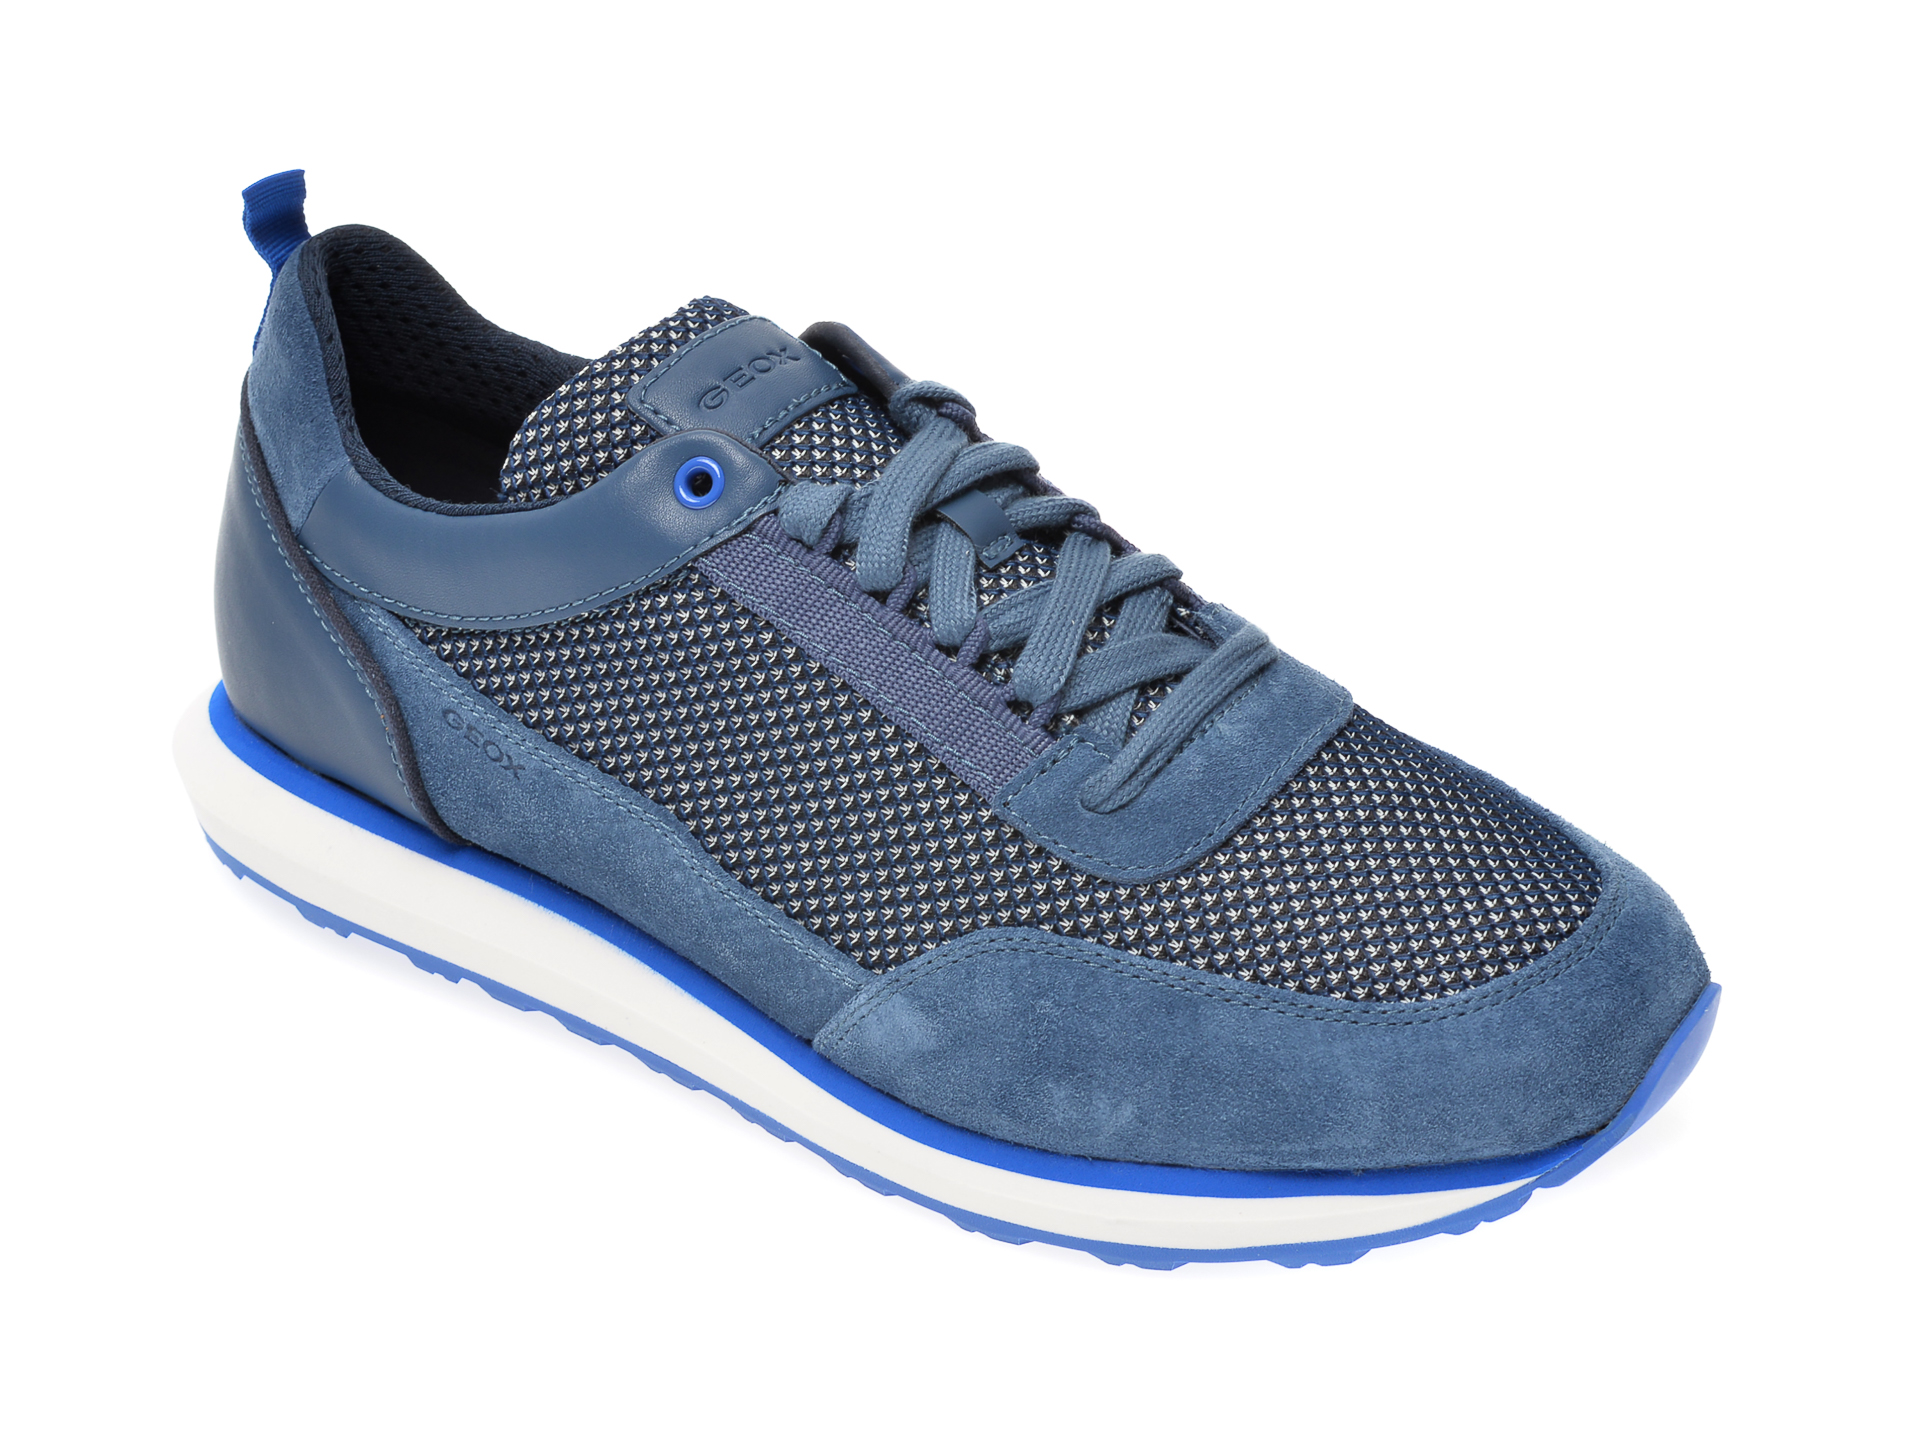 Pantofi sport GEOX albastri, U029WC, din material textil si piele naturala